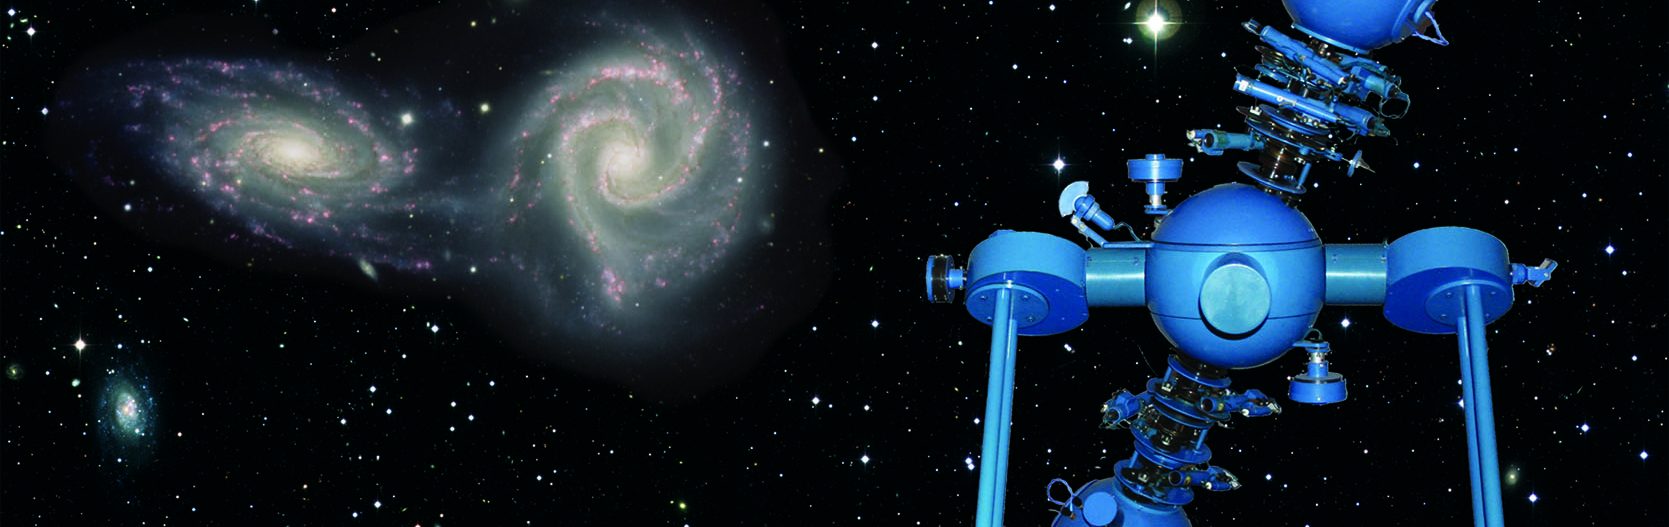 Auf diesem Bild sieht man ein blau-gefärbtes Planetarium vor einem Galaxie-Hintergrund.